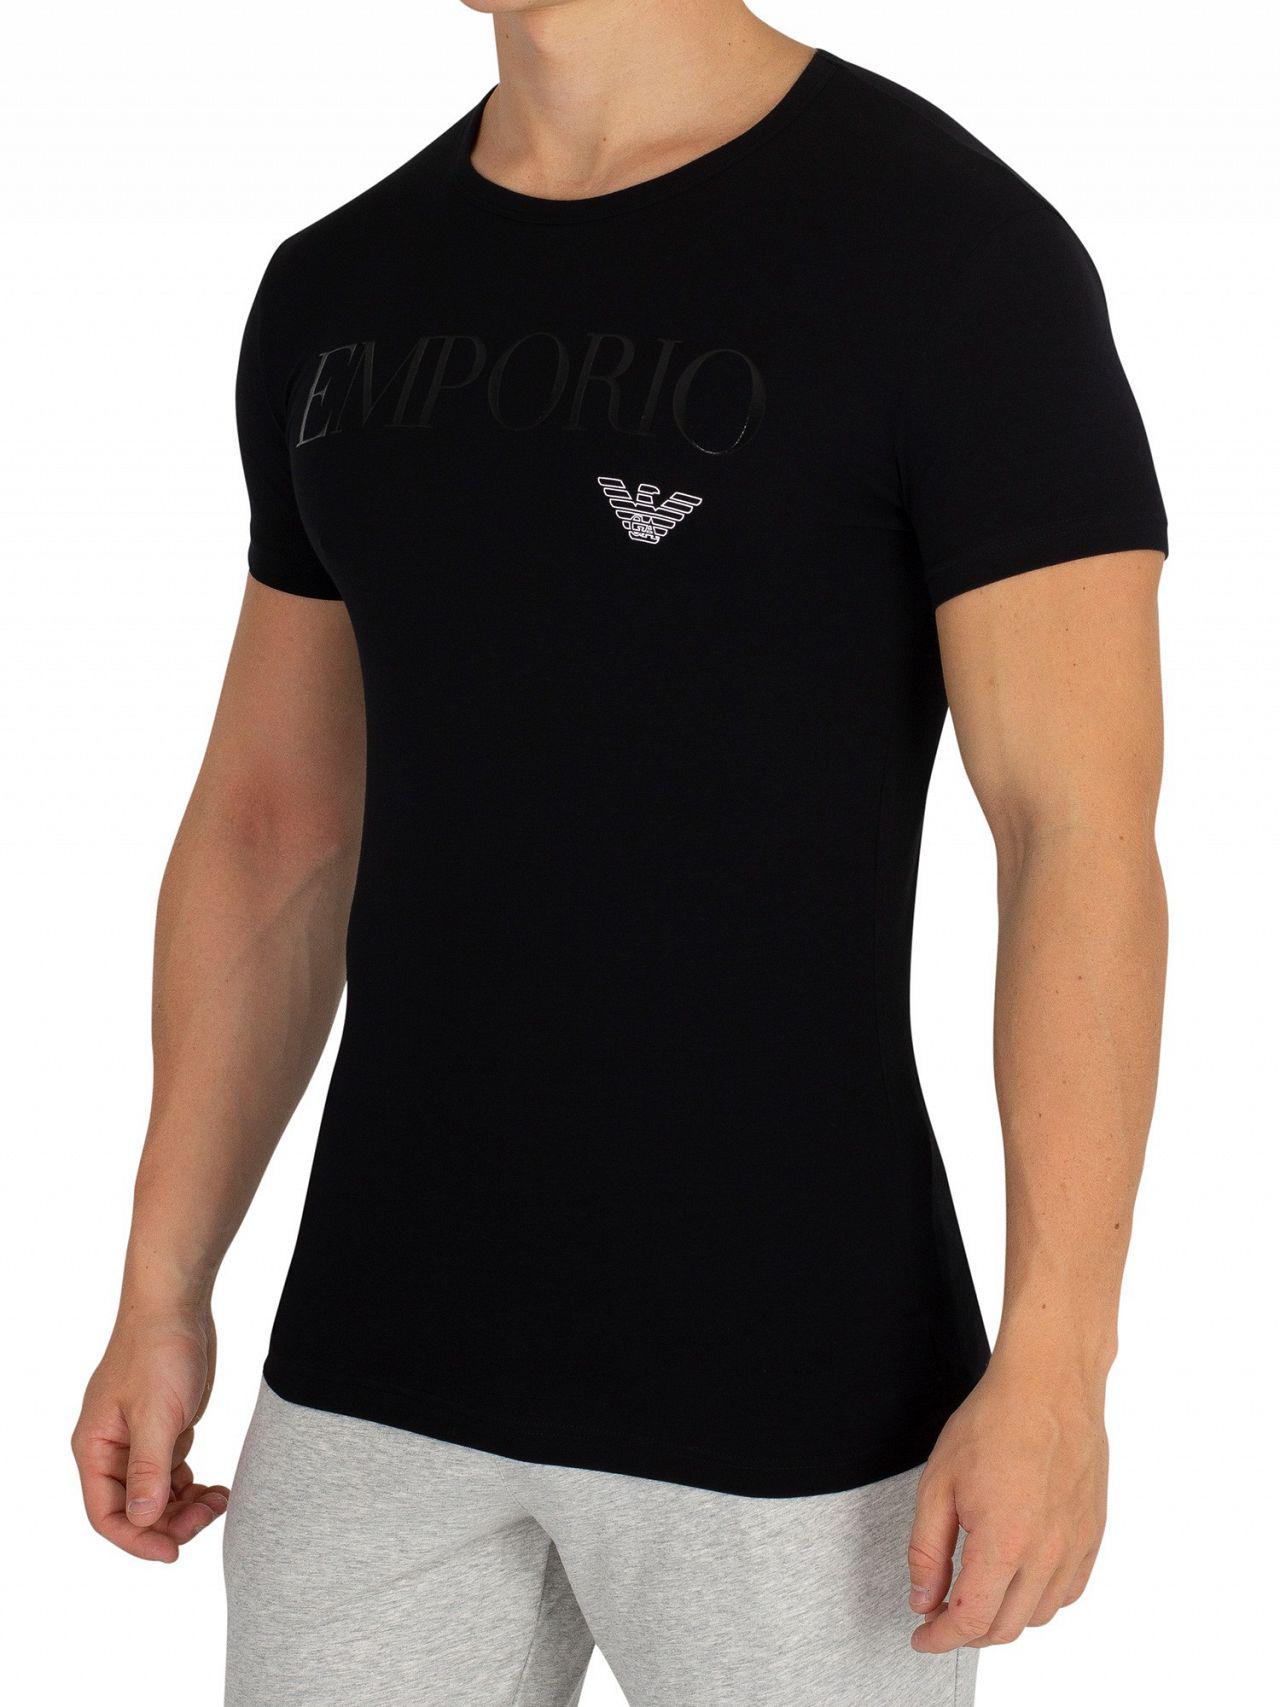 Emporio Armani Black Stretch Cotton Crew T-shirt in Black for Men - Lyst